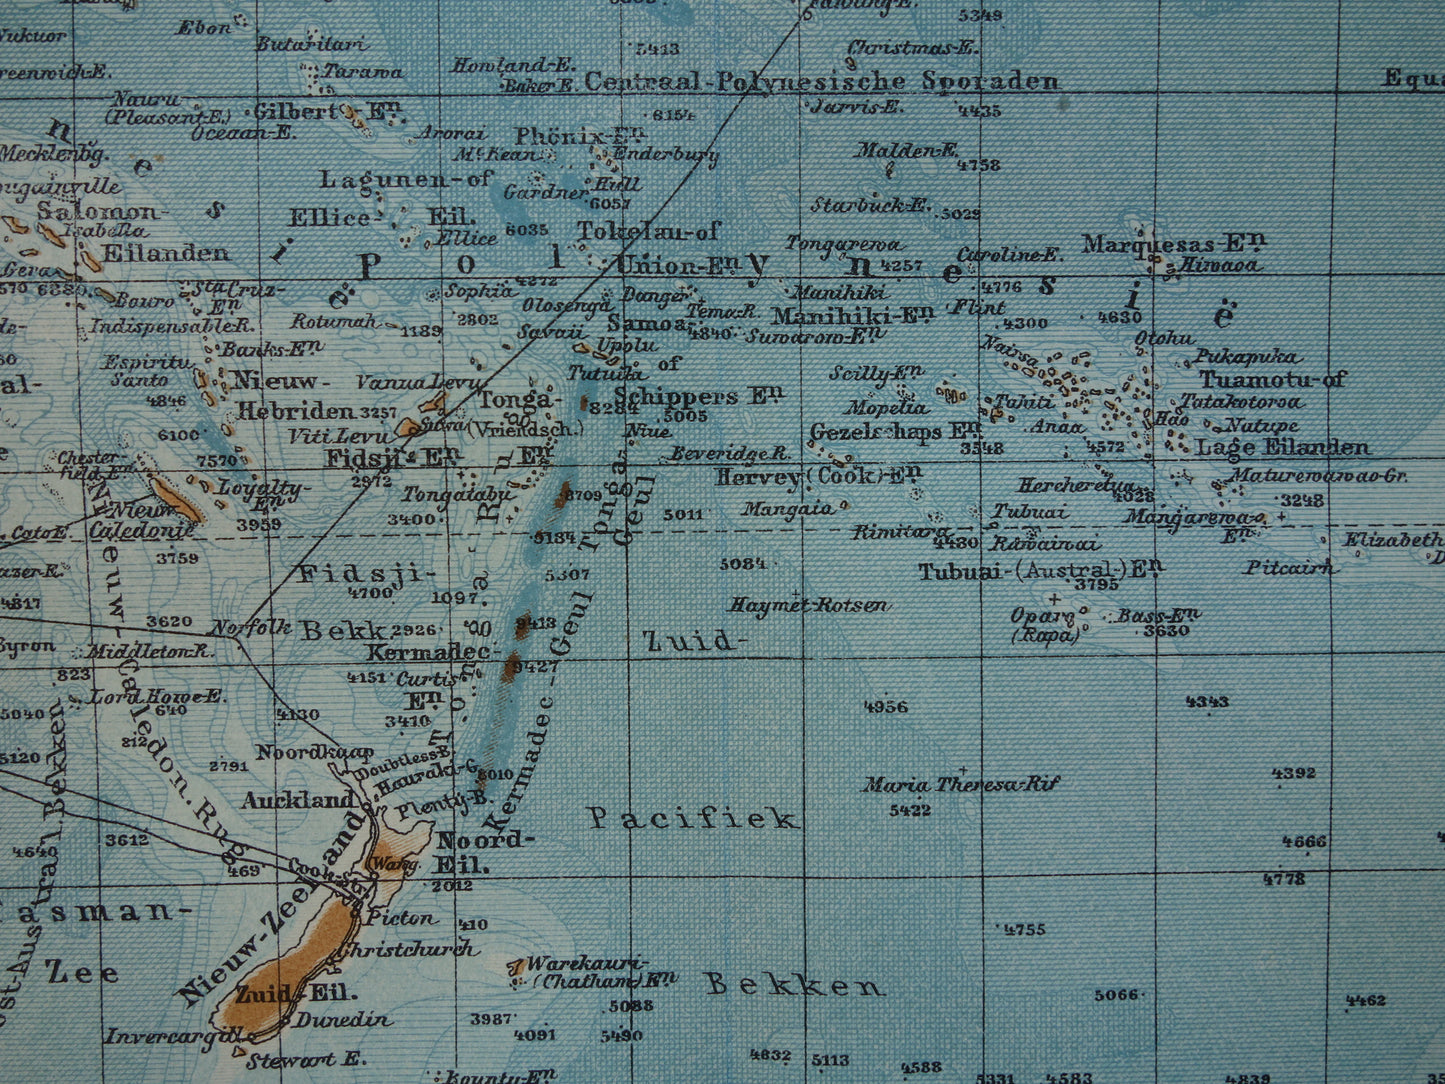 Oude kaart van de Grote Oceaan Originele 105+ jaar oude antieke Nederlandse landkaart Pacific